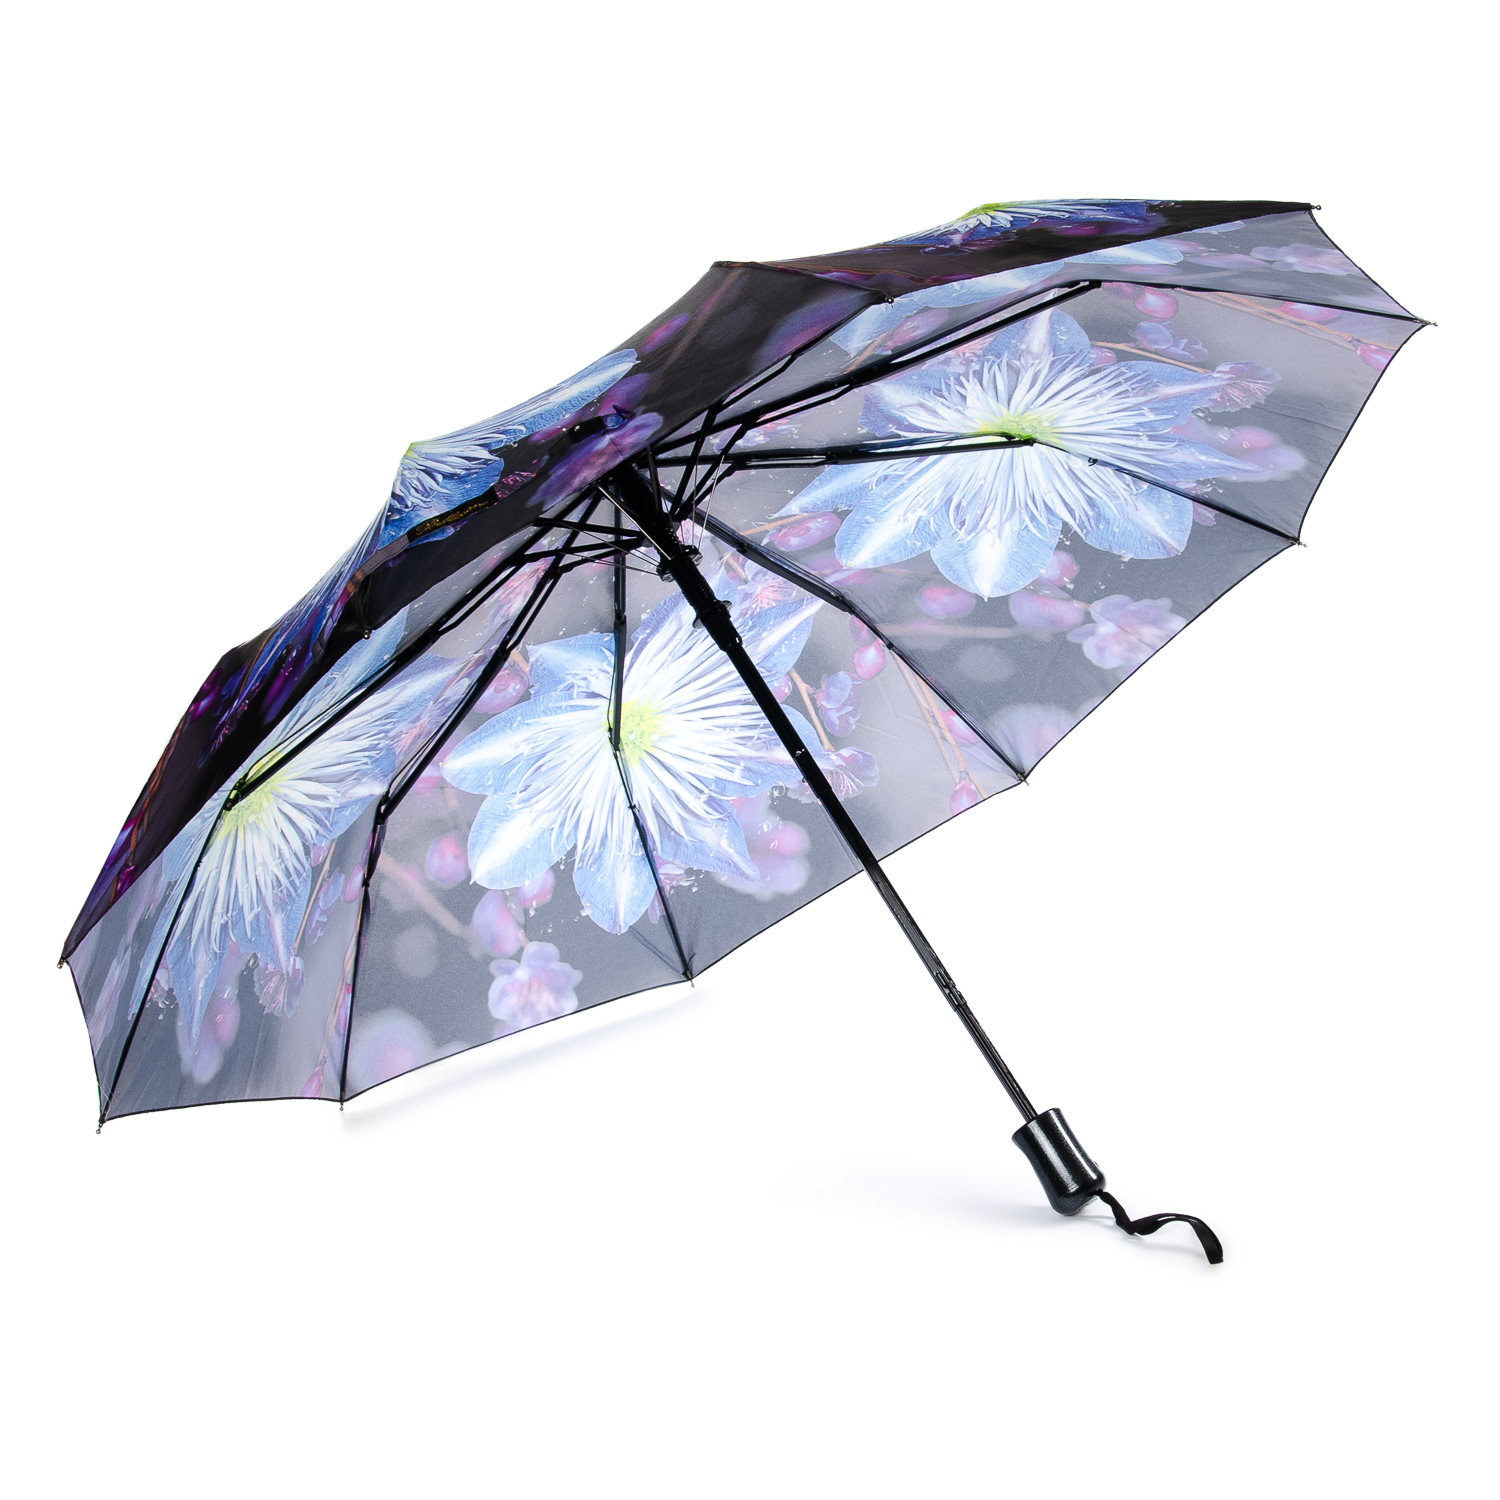 Вайлдберриз зонты женские. "Amiko" зонт женский полуавтомат. Валберис зонты женские полуавтомат. Зонт Umbrella полуавтомат. "Amiko" зонт женский полу/автомат арт1324.